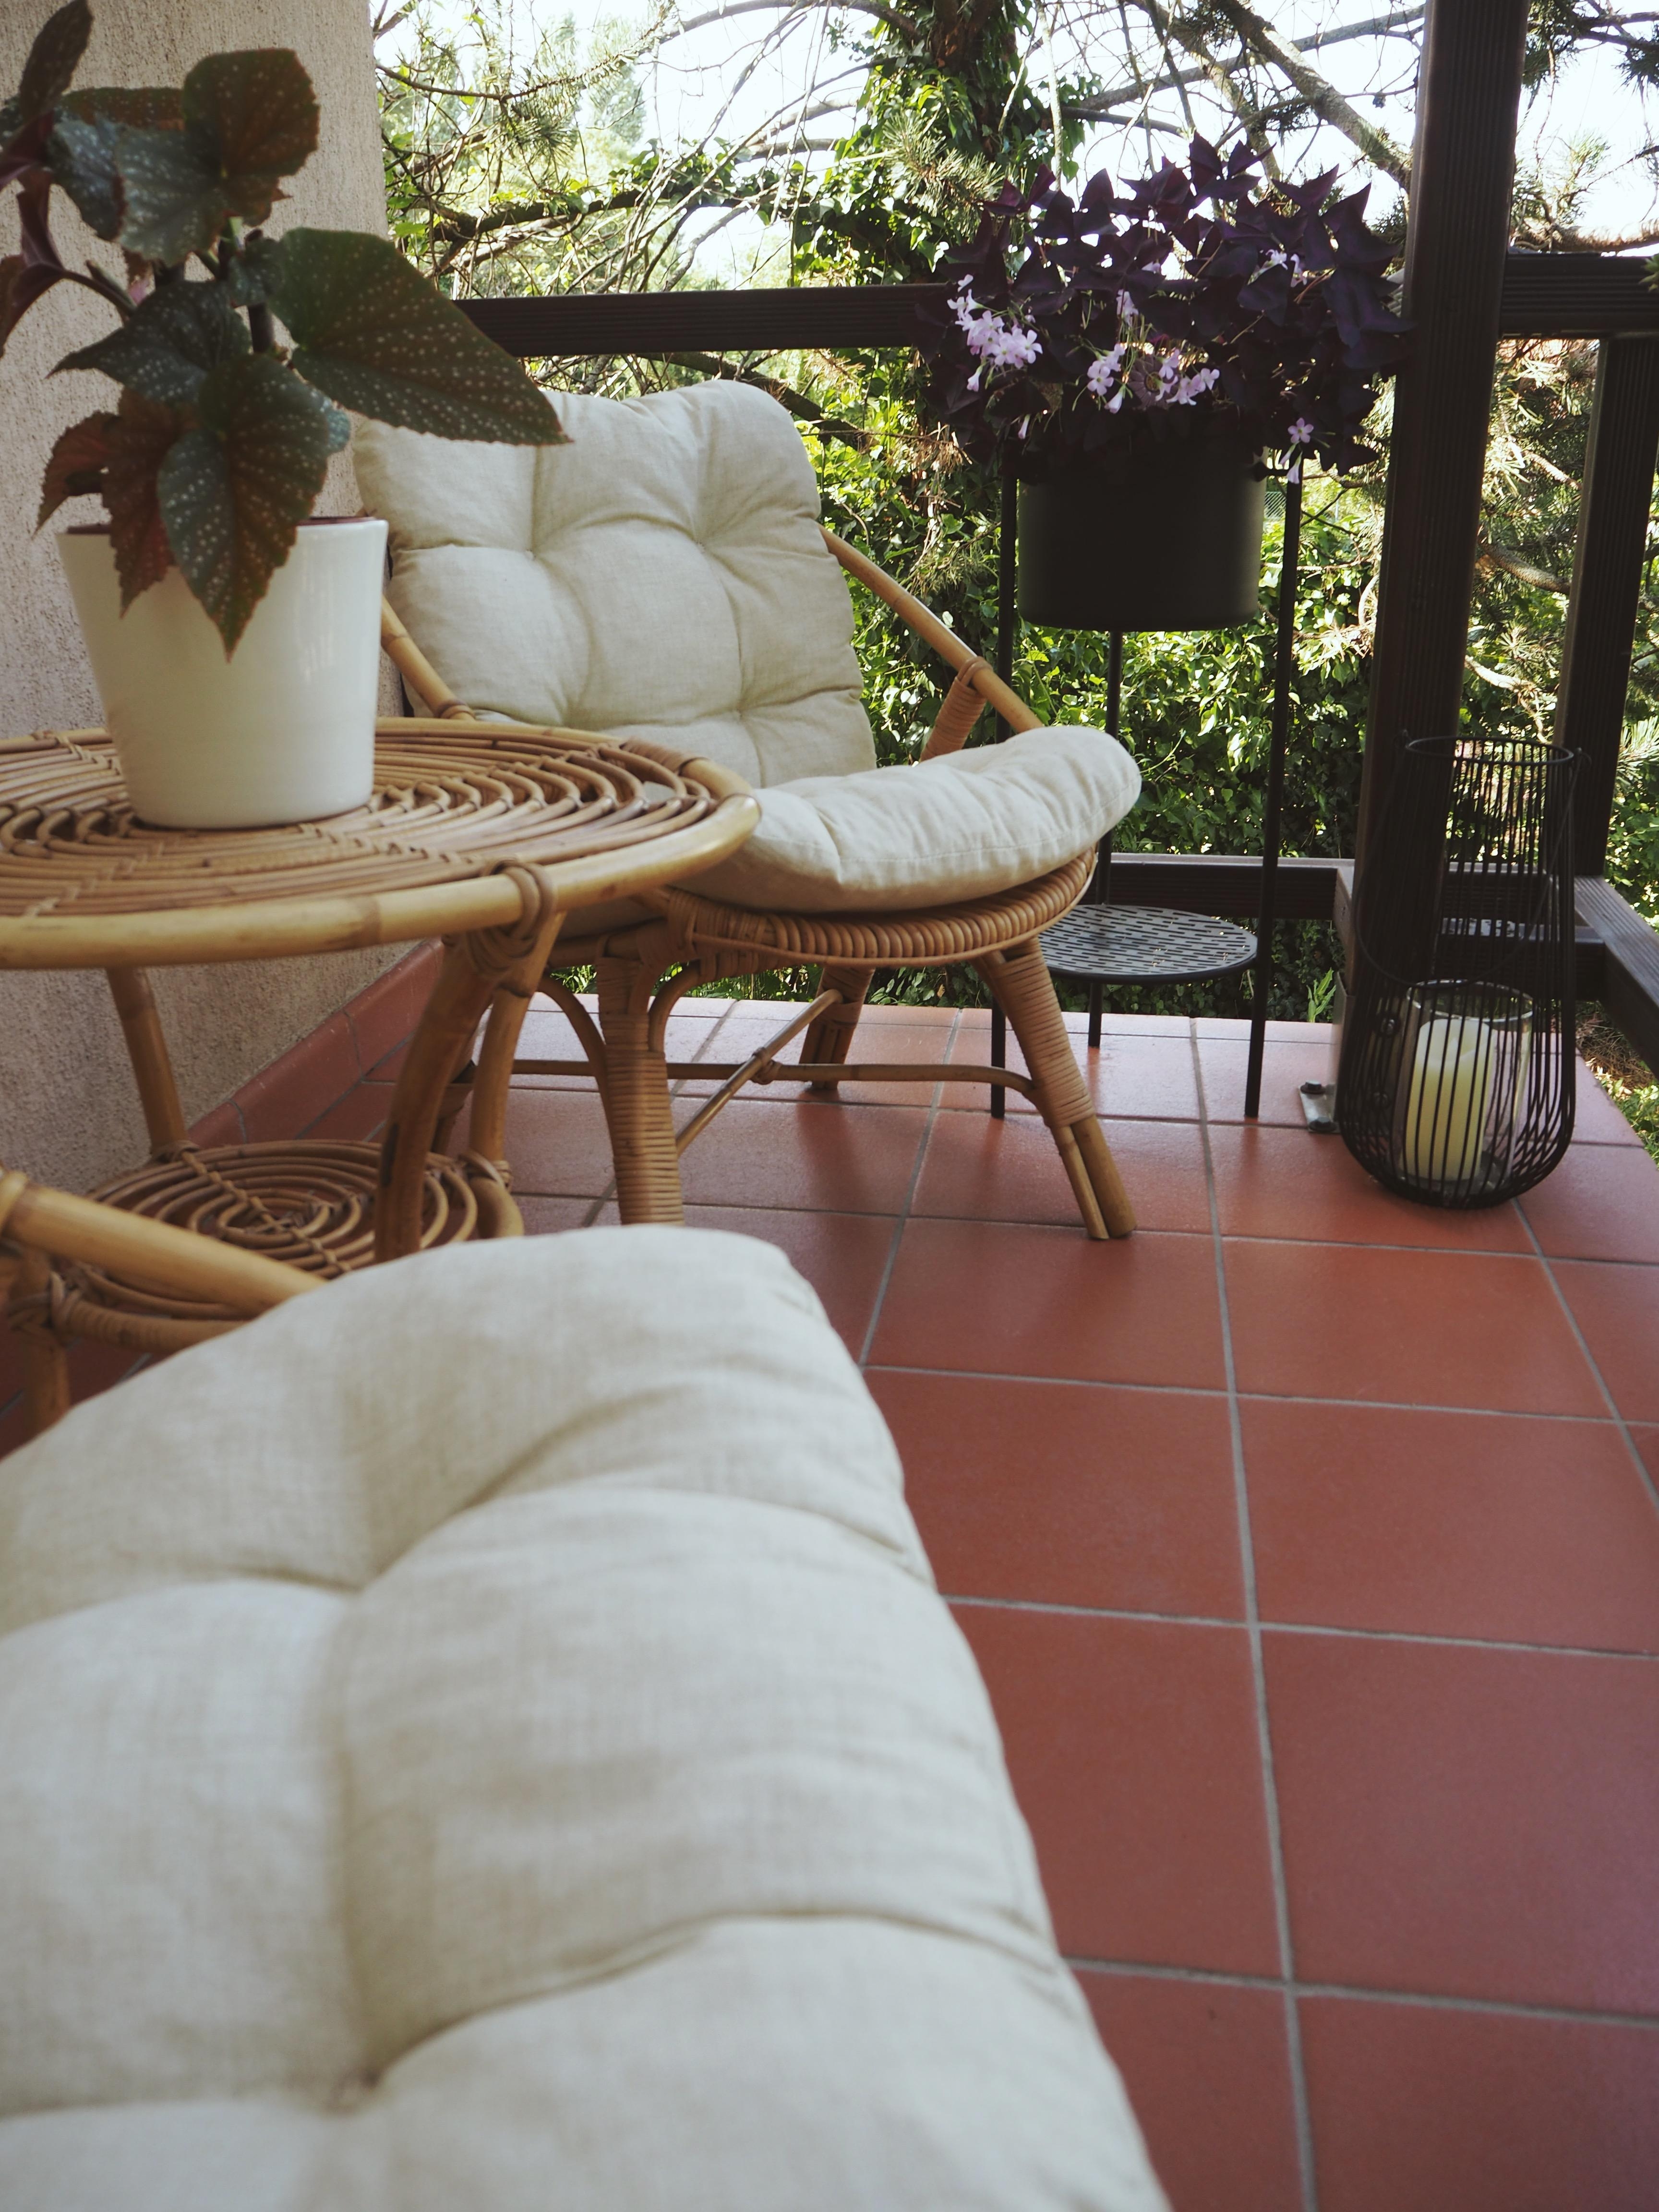 Veranda-Vibes #rattan #retro #veranda #midcentury